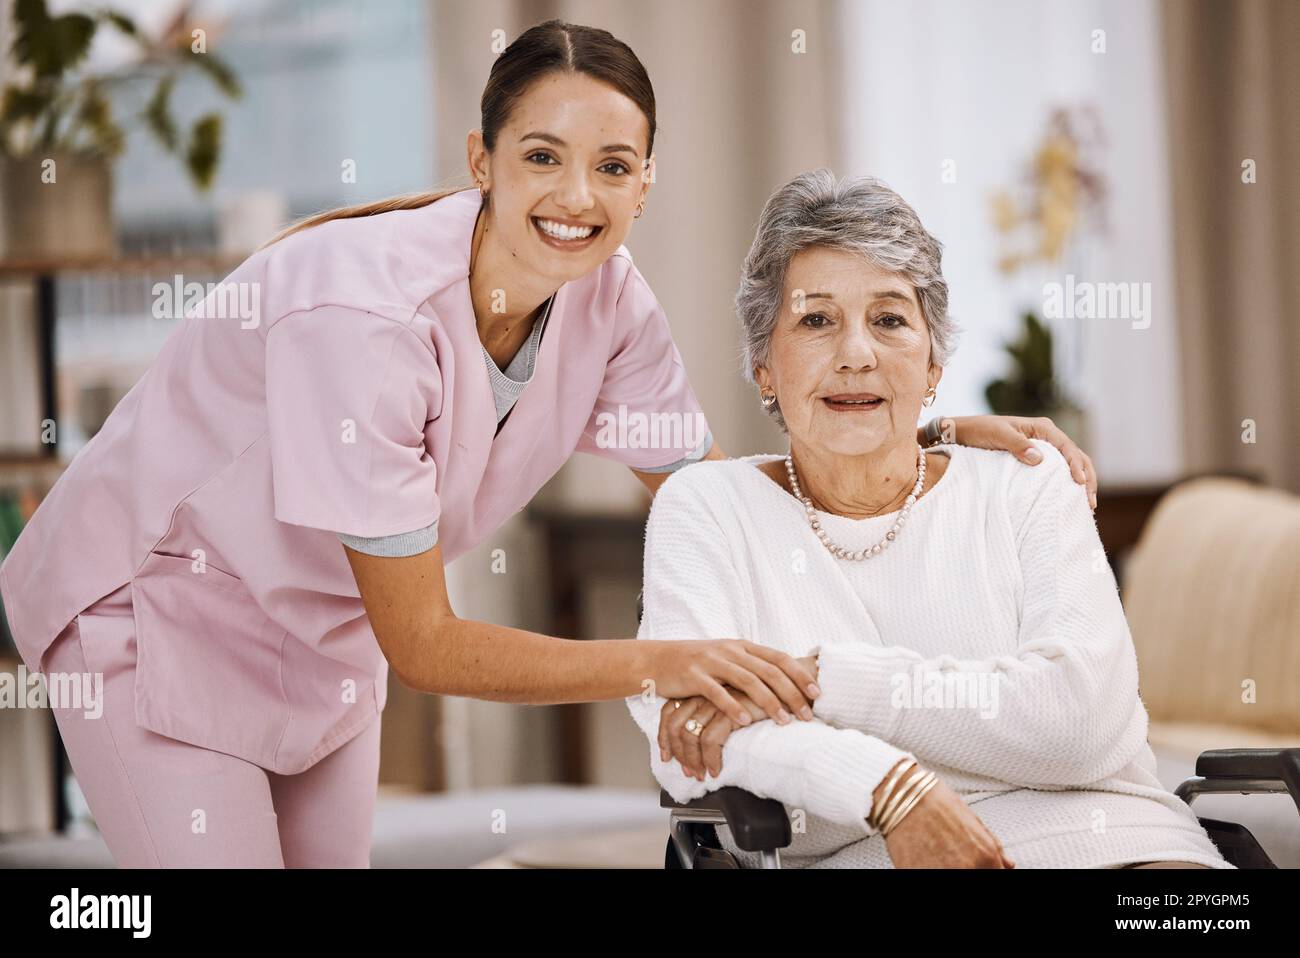 Supporto per donne, anziani o sedie a rotelle nella casa di cura, nel soggiorno della casa o nella clinica di riabilitazione del benessere. Ritratto, sorriso o infermiere di assistenza sanitaria felice con anziani in pensione in assistenza alla mobilità disabilità Foto Stock